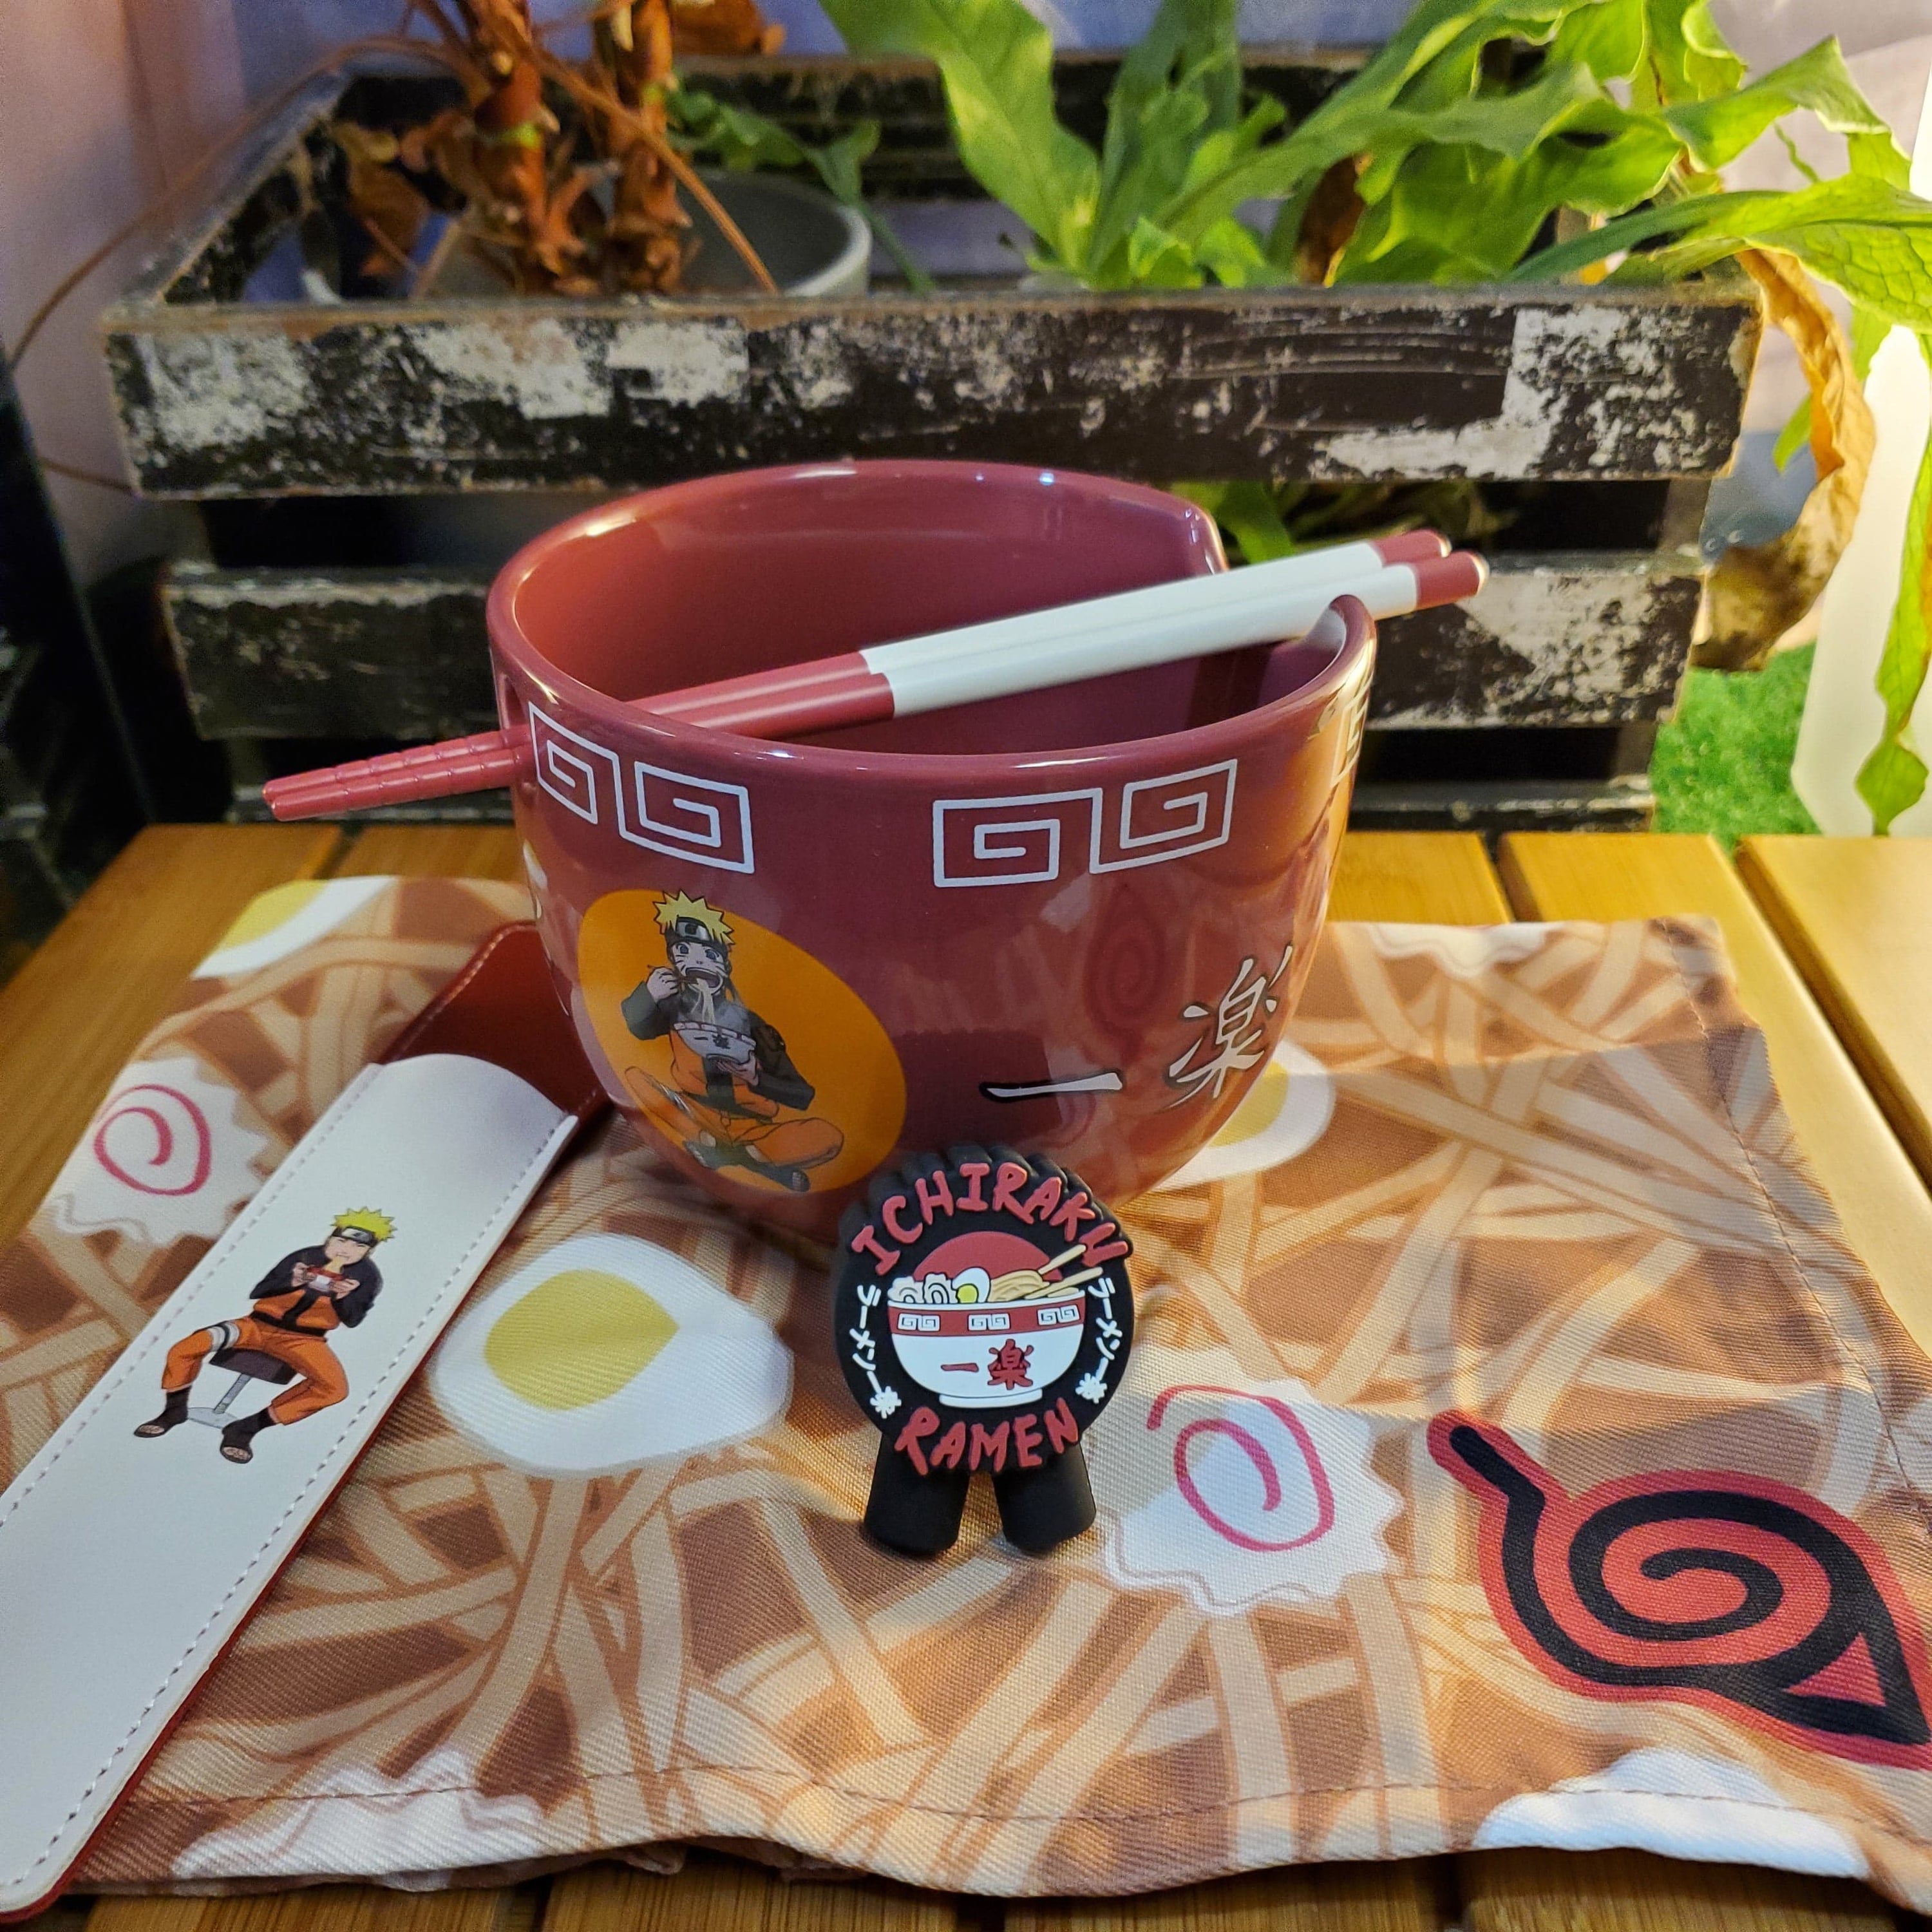 Culture Fly Naruto Ichiraku Ramen Bowl, Chopsticks & Napkin Set Kawaii Gifts 840070928718